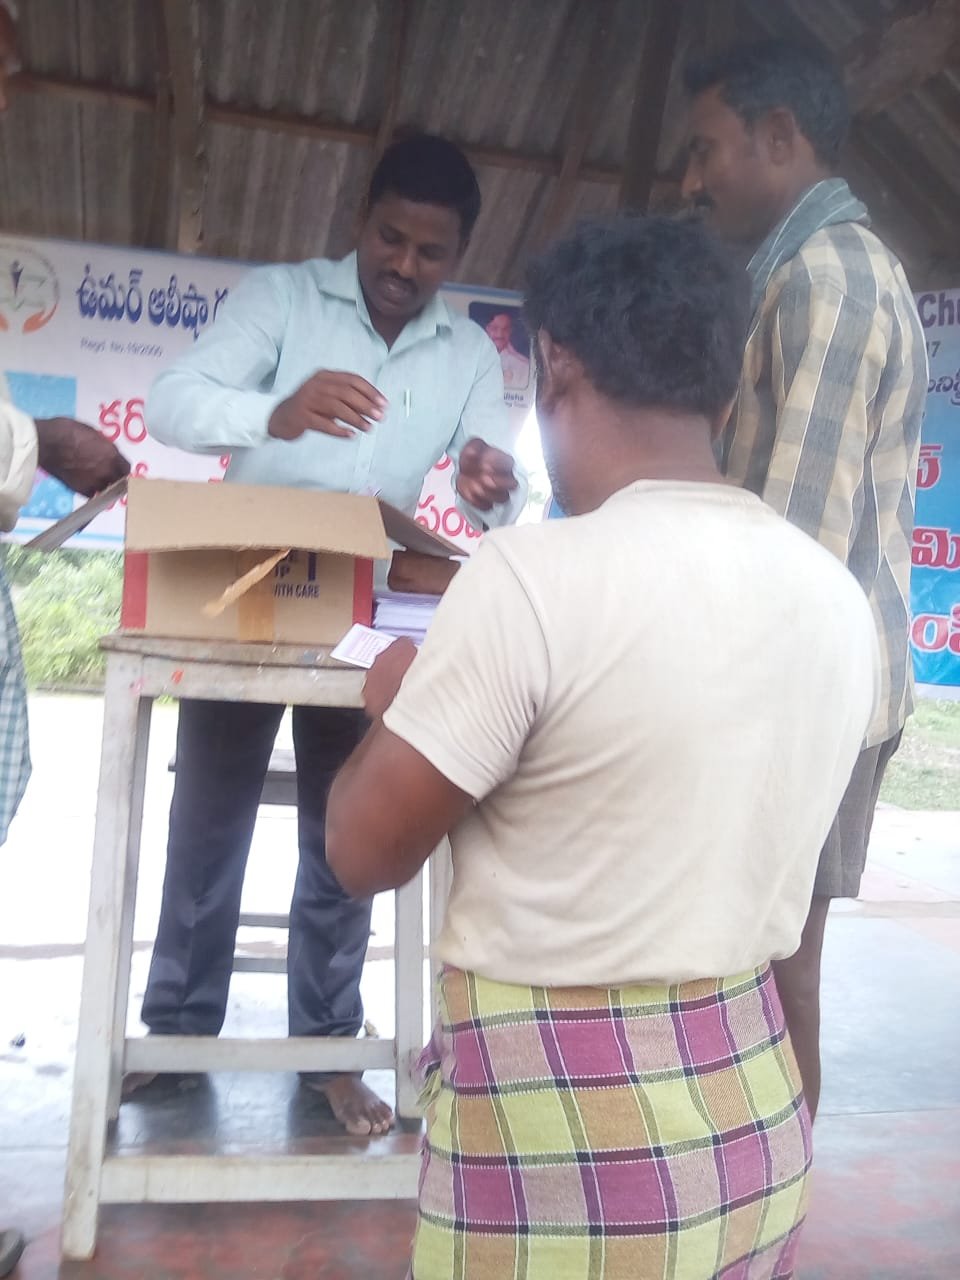 Coronavirus preventive medicine distributed by UARDT at Mallam Village on 06-March-2020